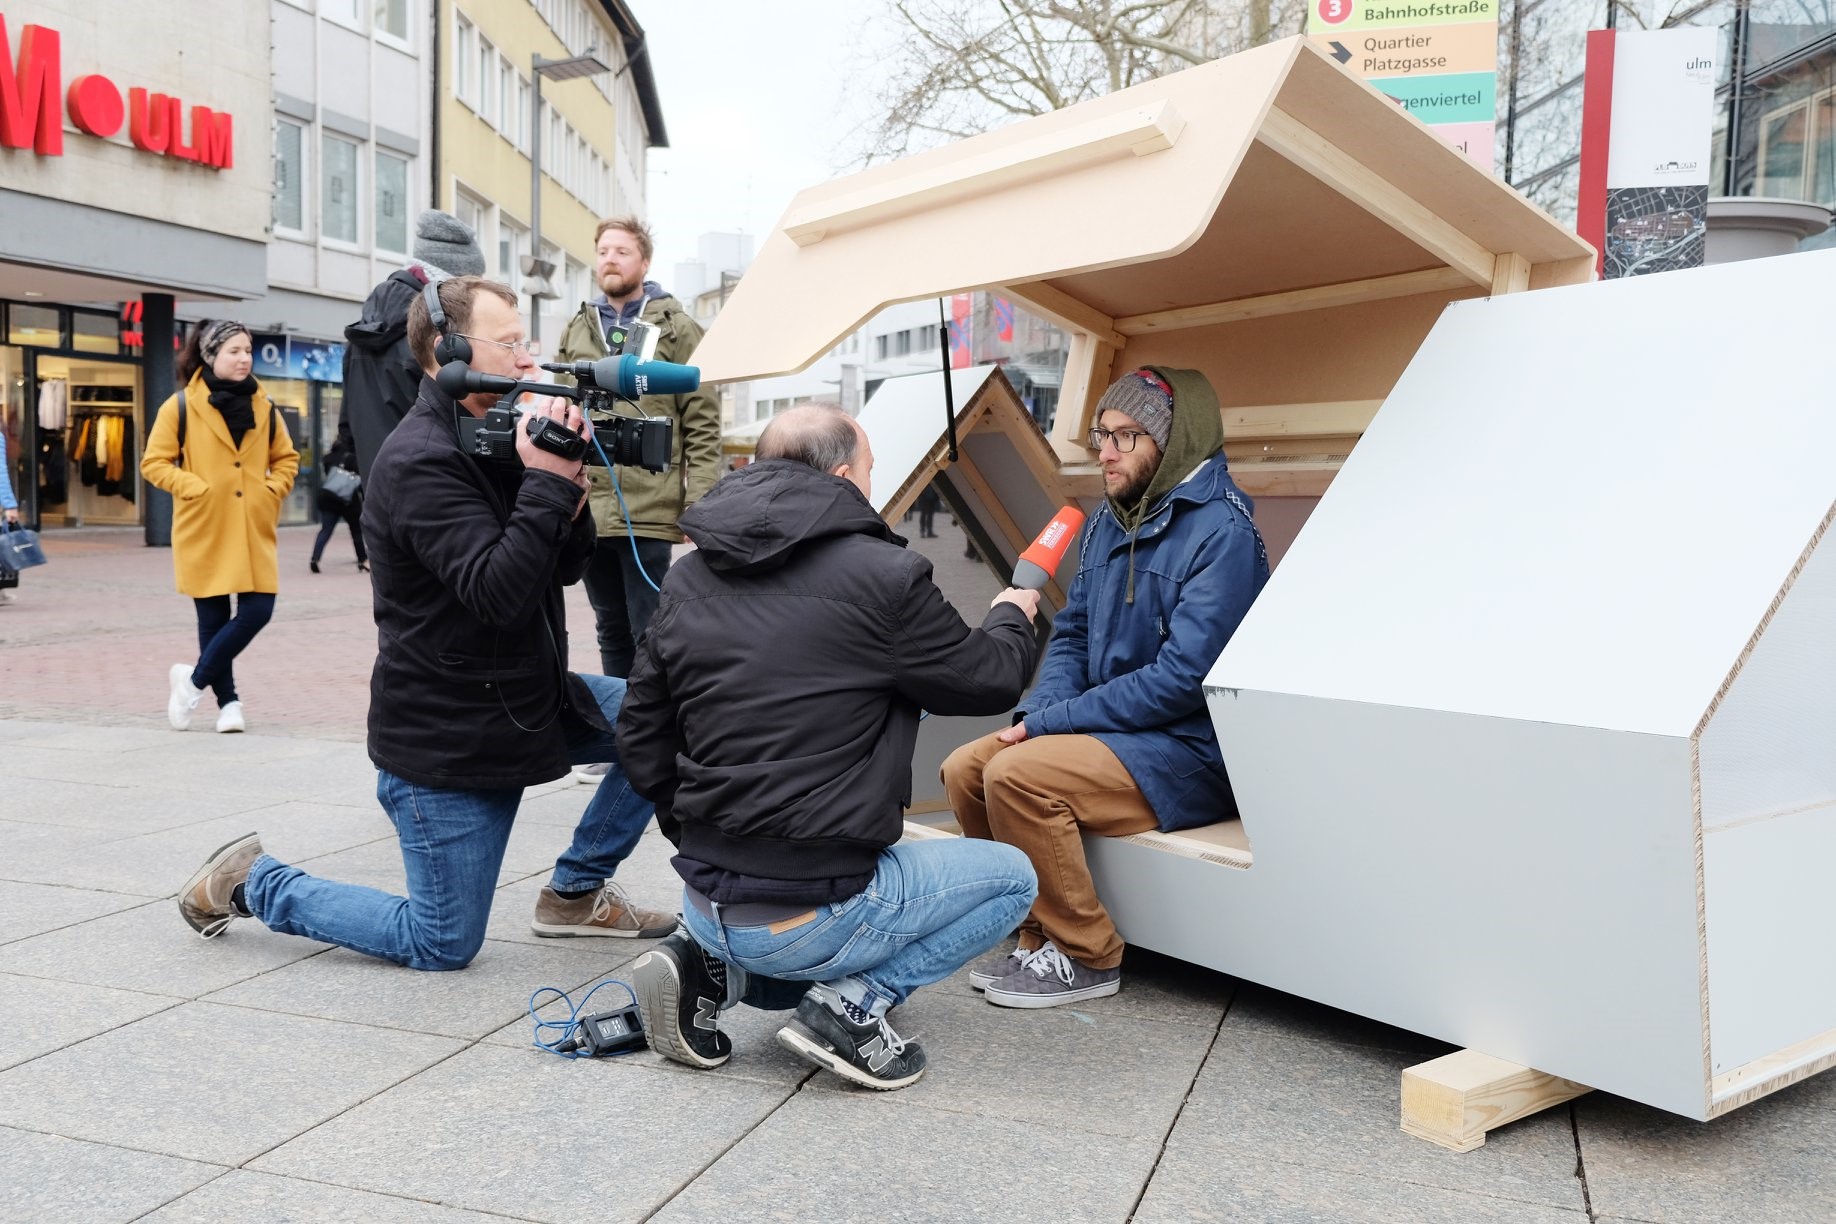 Alemanha cria cápsula abrigo para pessoas sem-teto, que protege do frio intenso e conta com energia solar